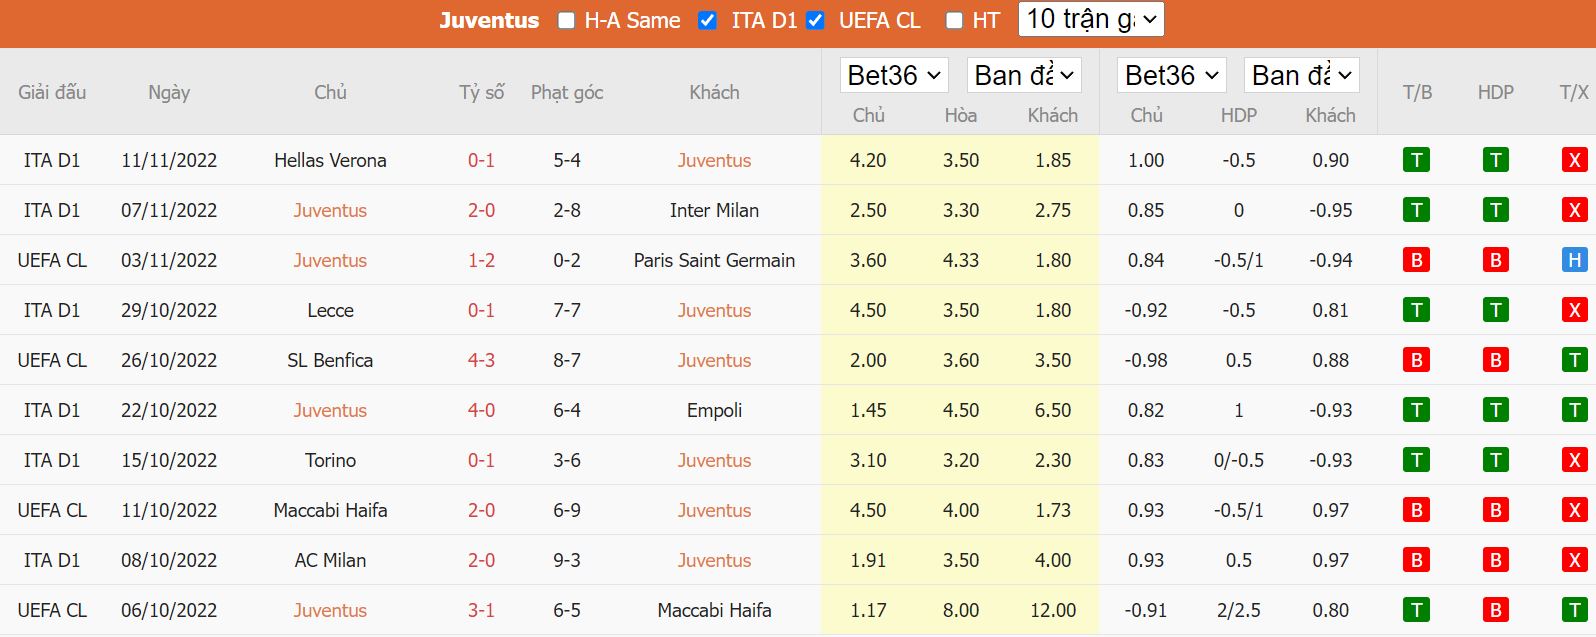 Thành tích gần đây của Juventus - Serie A